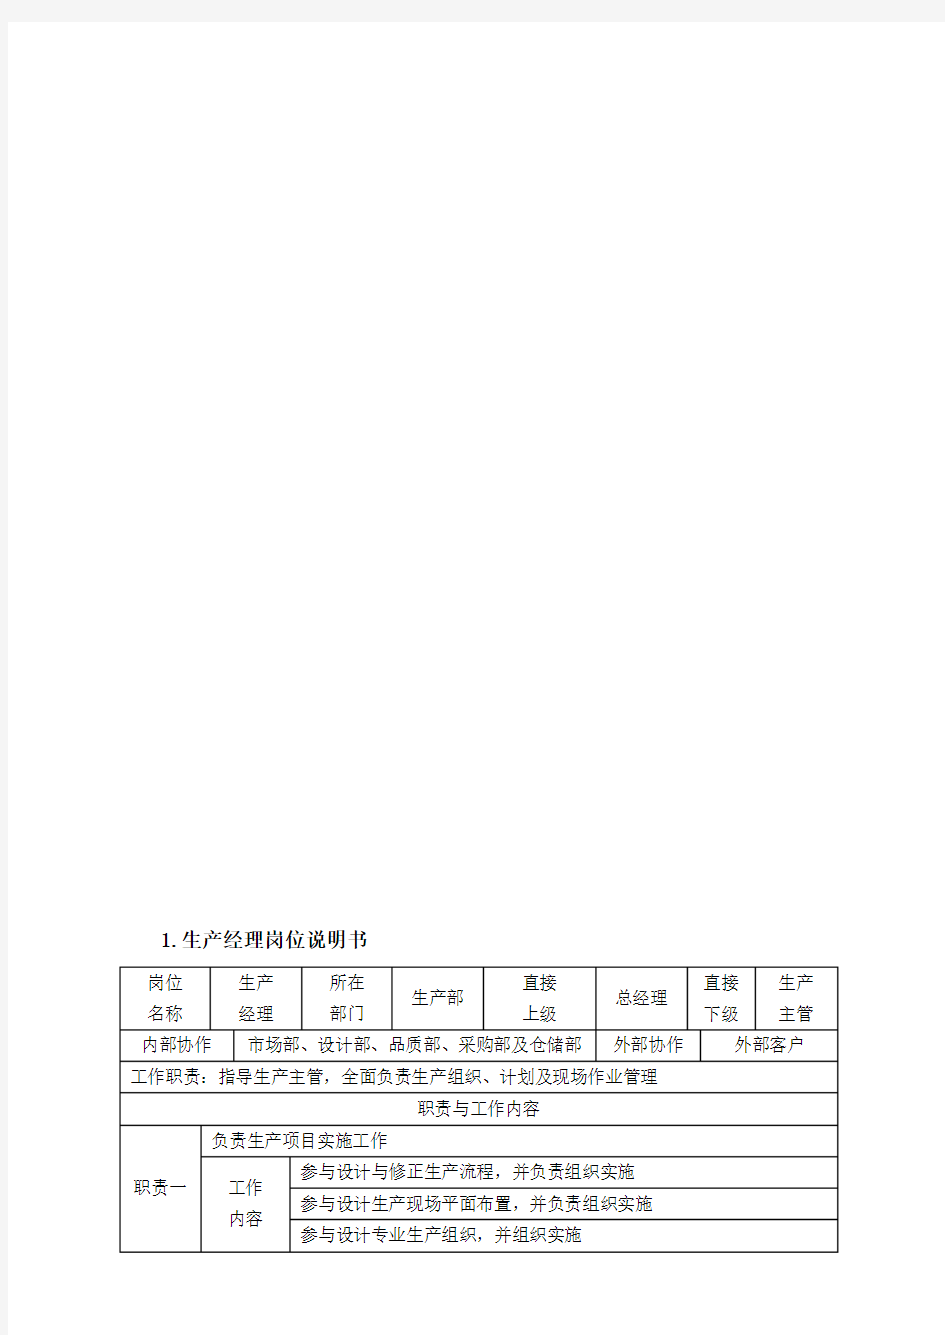 【企业】生产管理制度、表格大全(超全) 488页